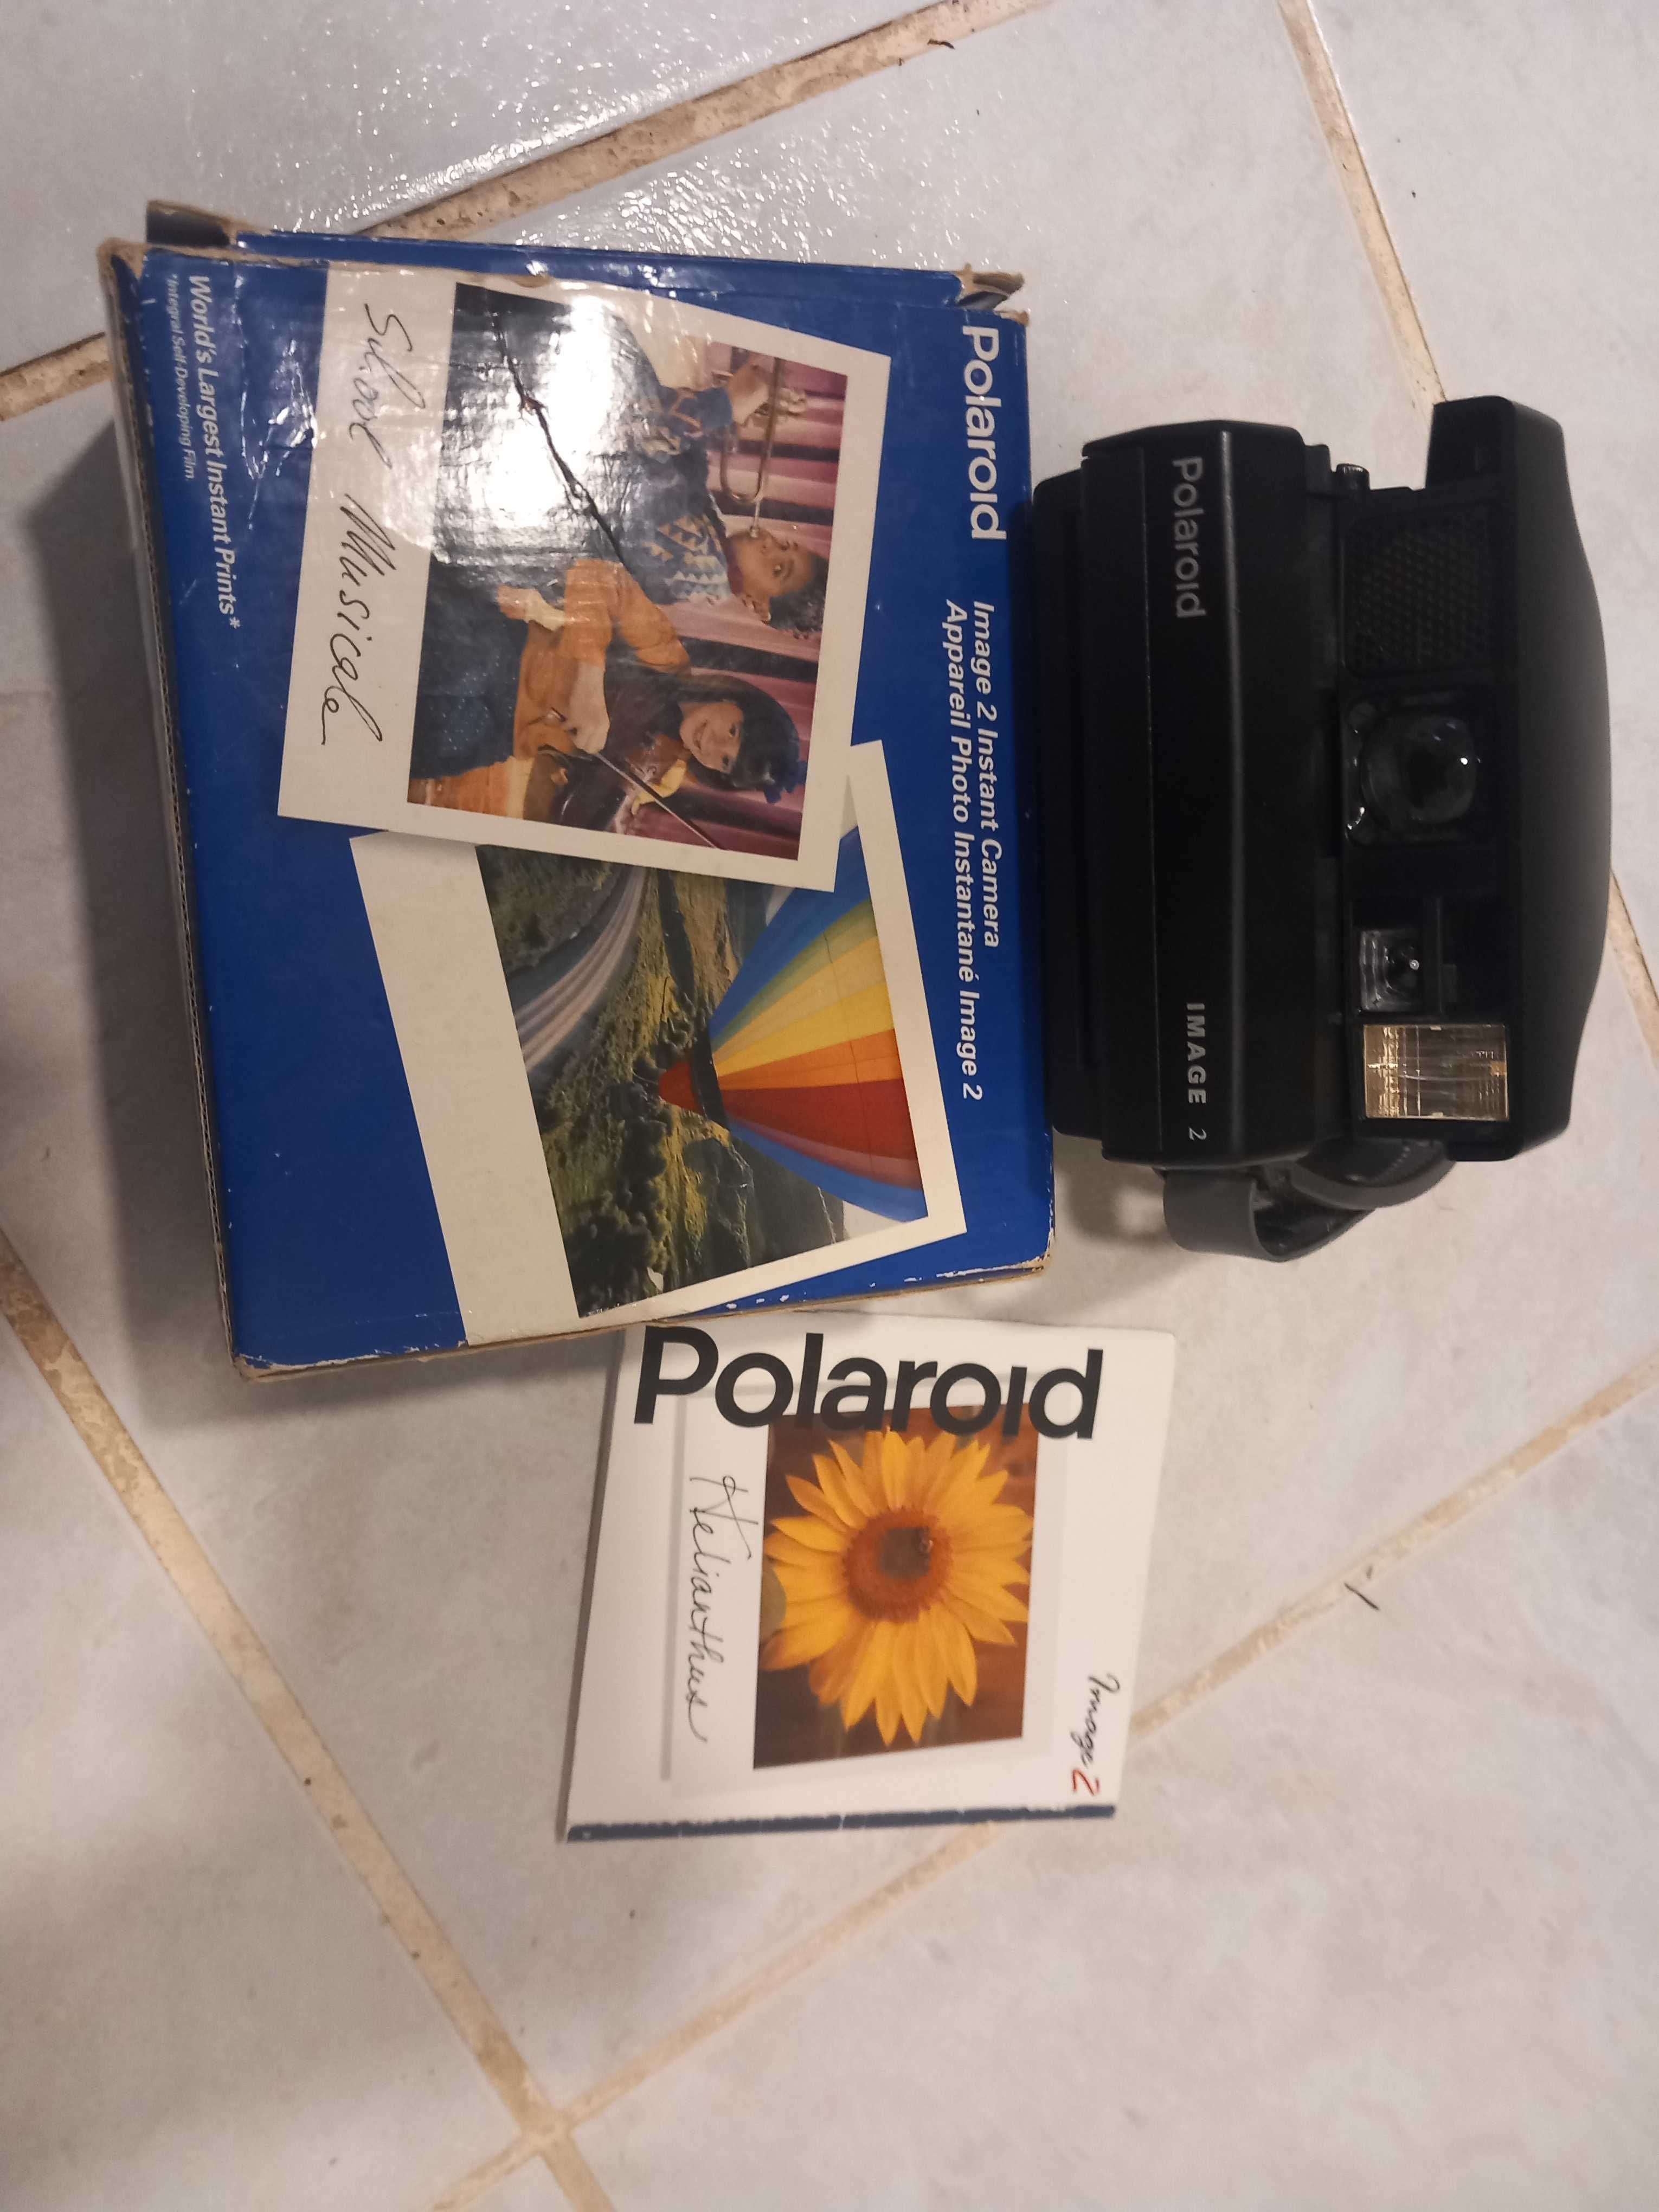 Polaroid image 2 com cartucho velho, caixa e manual